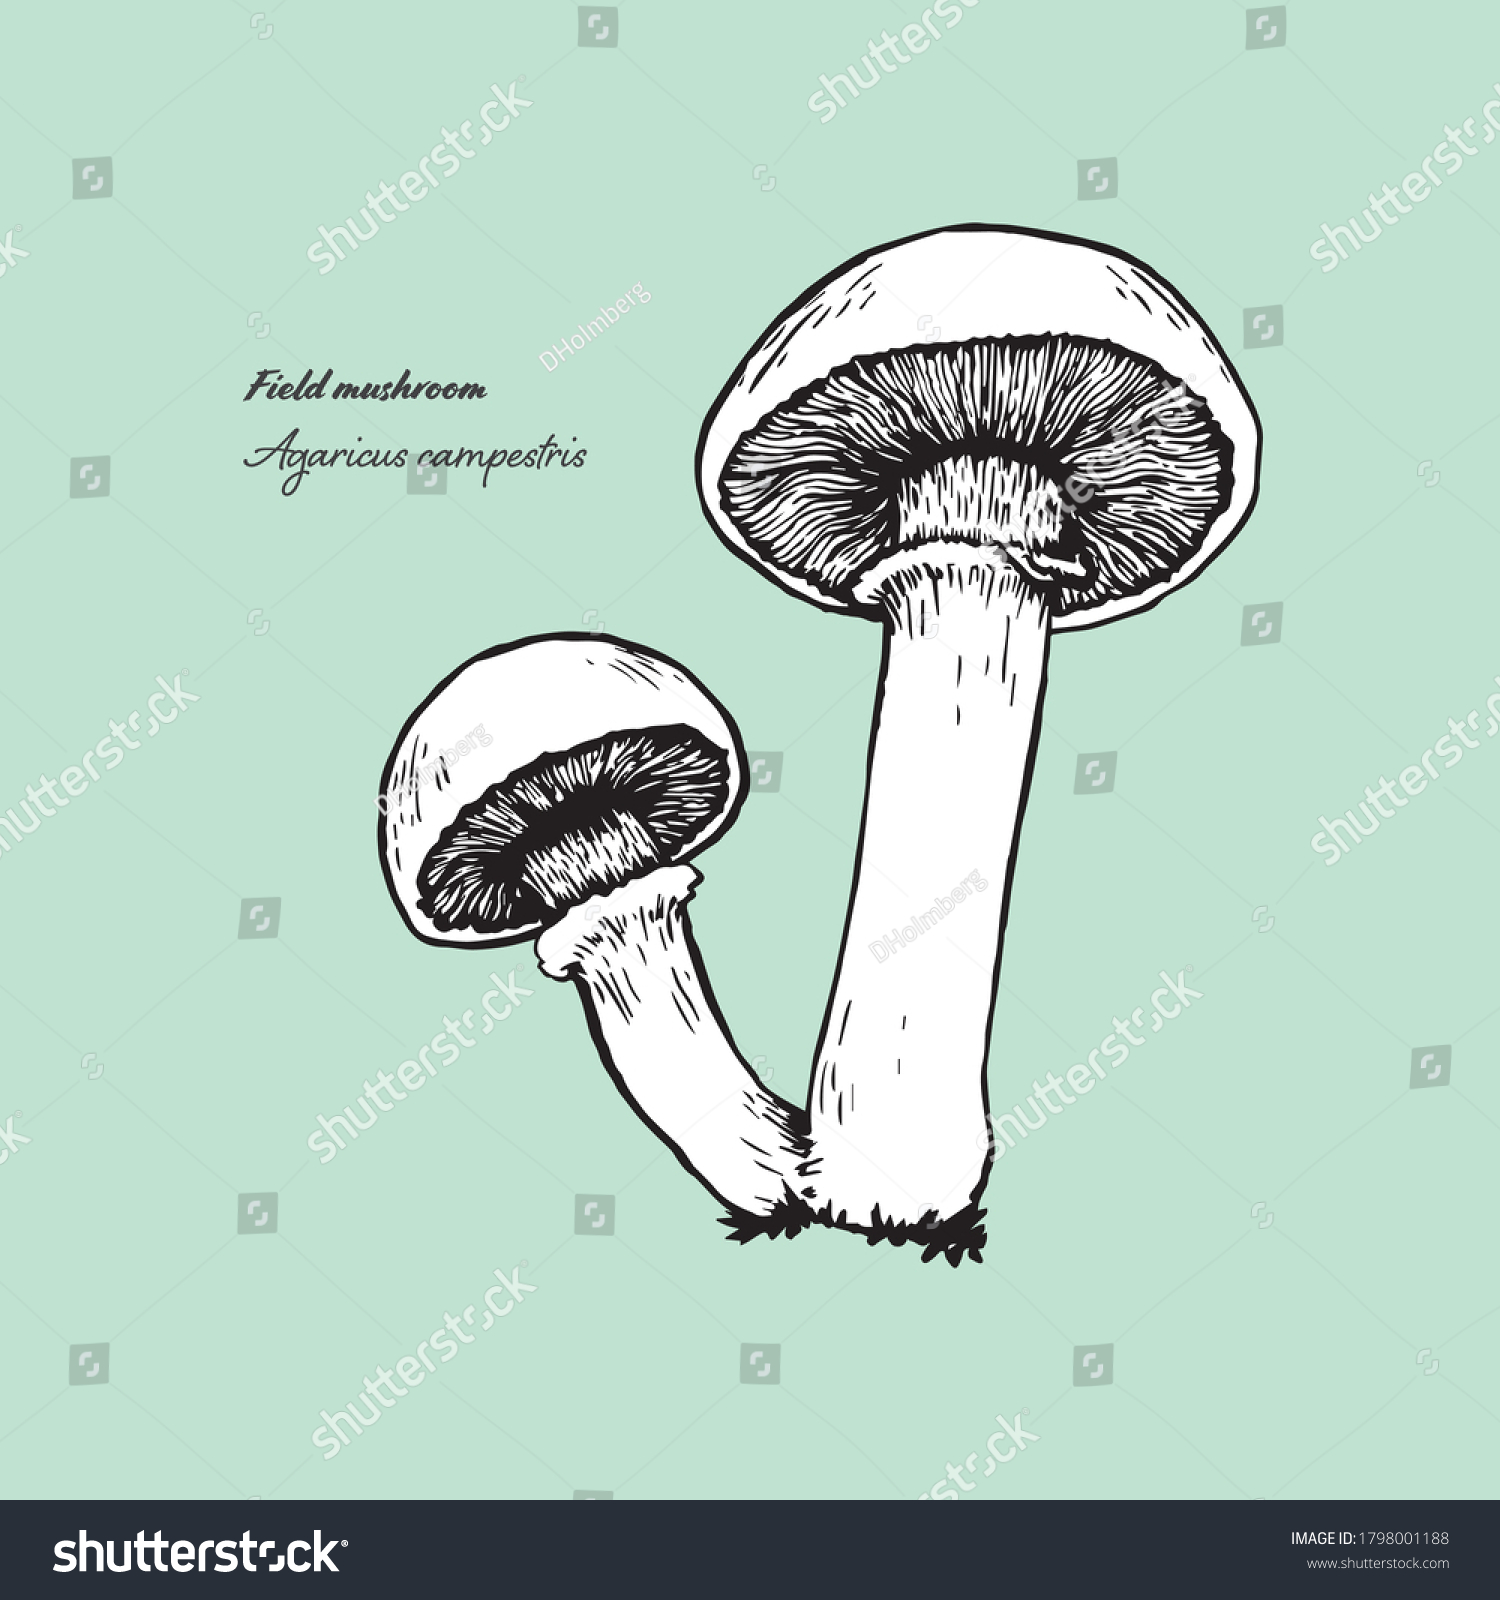 Vectorized line art illustration of the edible mushroom horn-of-plenty. #1798001188